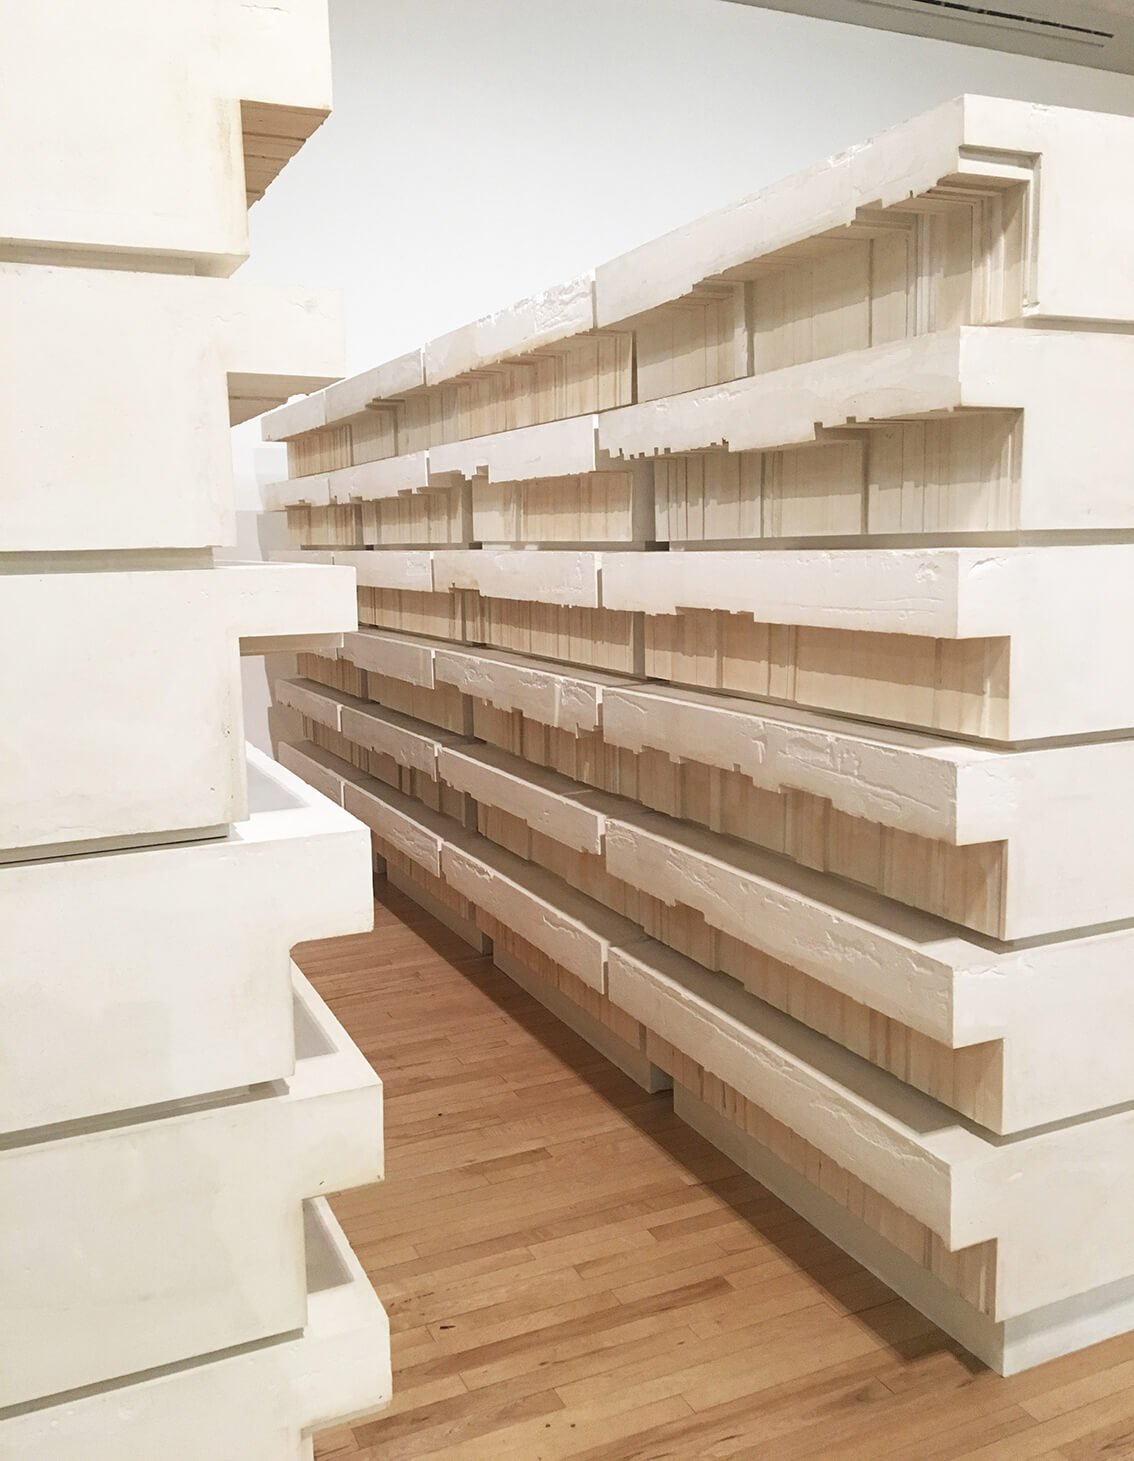 rachel-whiteread-library-shelves.jpg